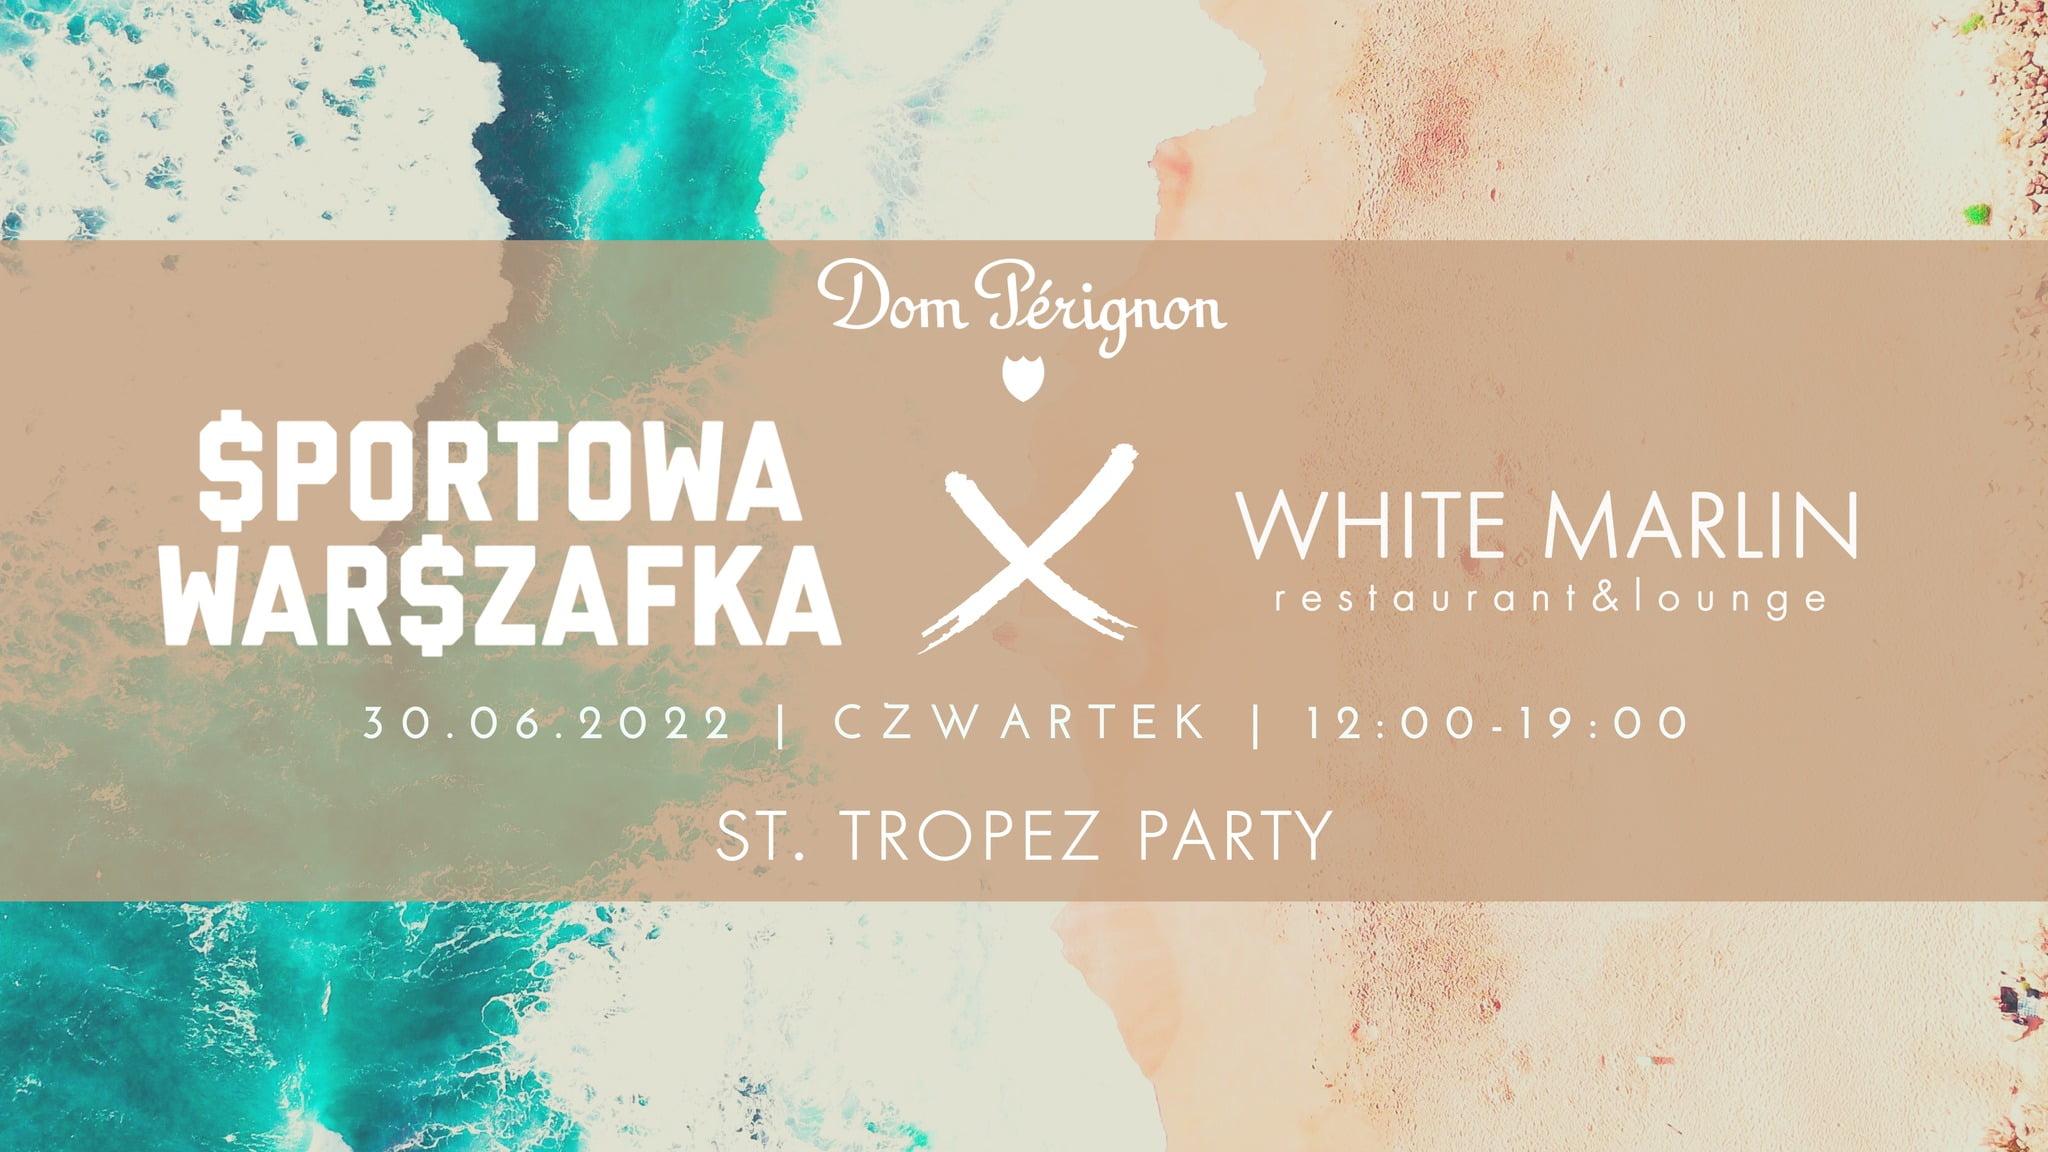 Sportowa Warszafka X White Marlin – St. Tropez Party